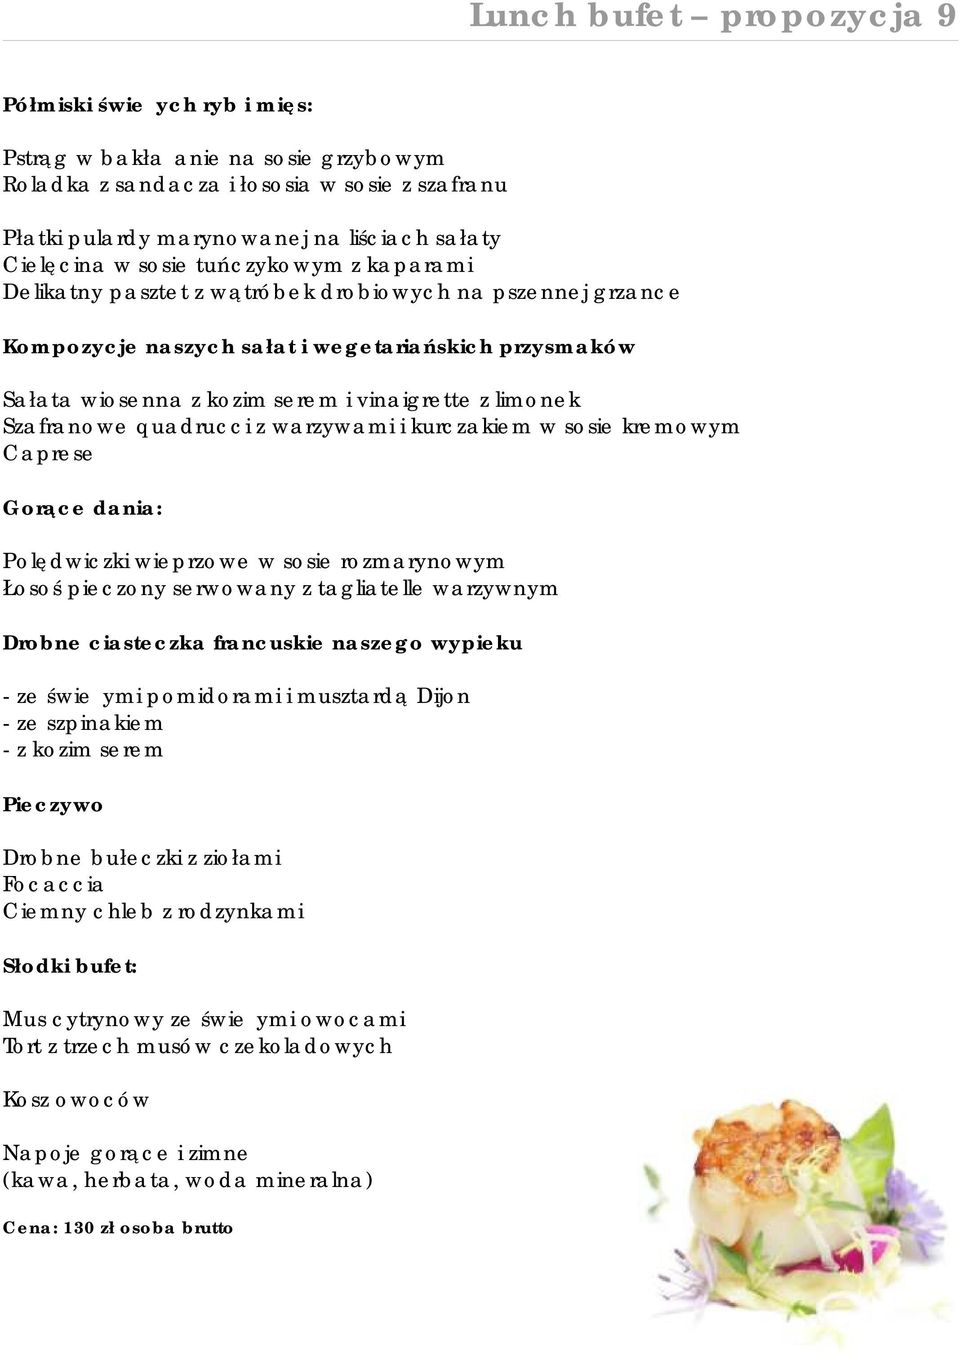 limonek Szafranowe quadrucci z warzywami i kurczakiem w sosie kremowym Caprese Gorące dania: Polędwiczki wieprzowe w sosie rozmarynowym Łosoś pieczony serwowany z tagliatelle warzywnym - ze